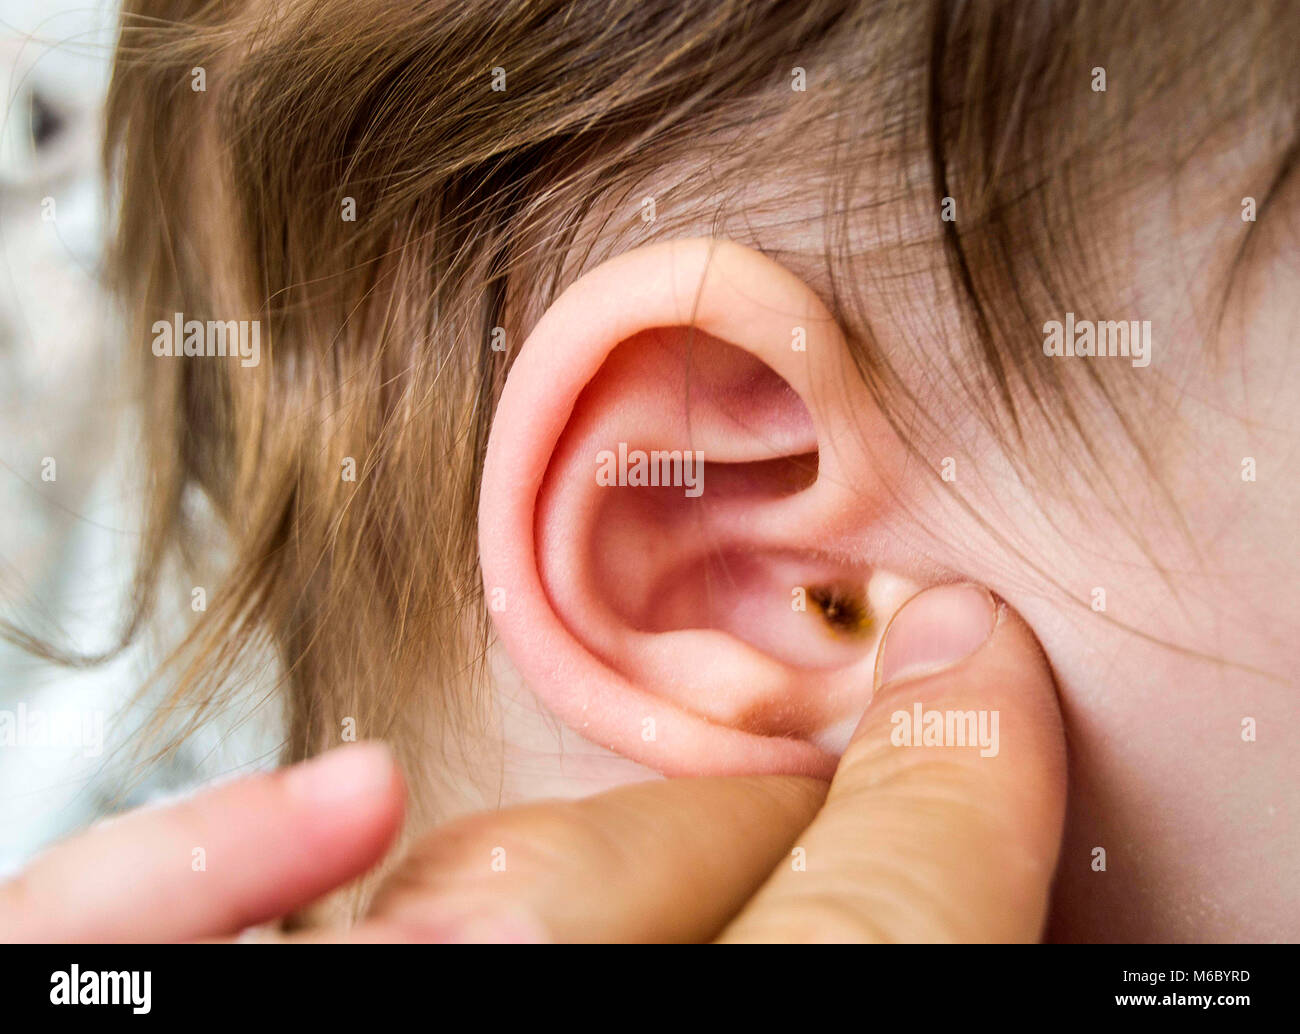 Ohr Bilder, baby Ohren und Ohr Erkrankungen, Arzt, Ohr Stockfotografie -  Alamy